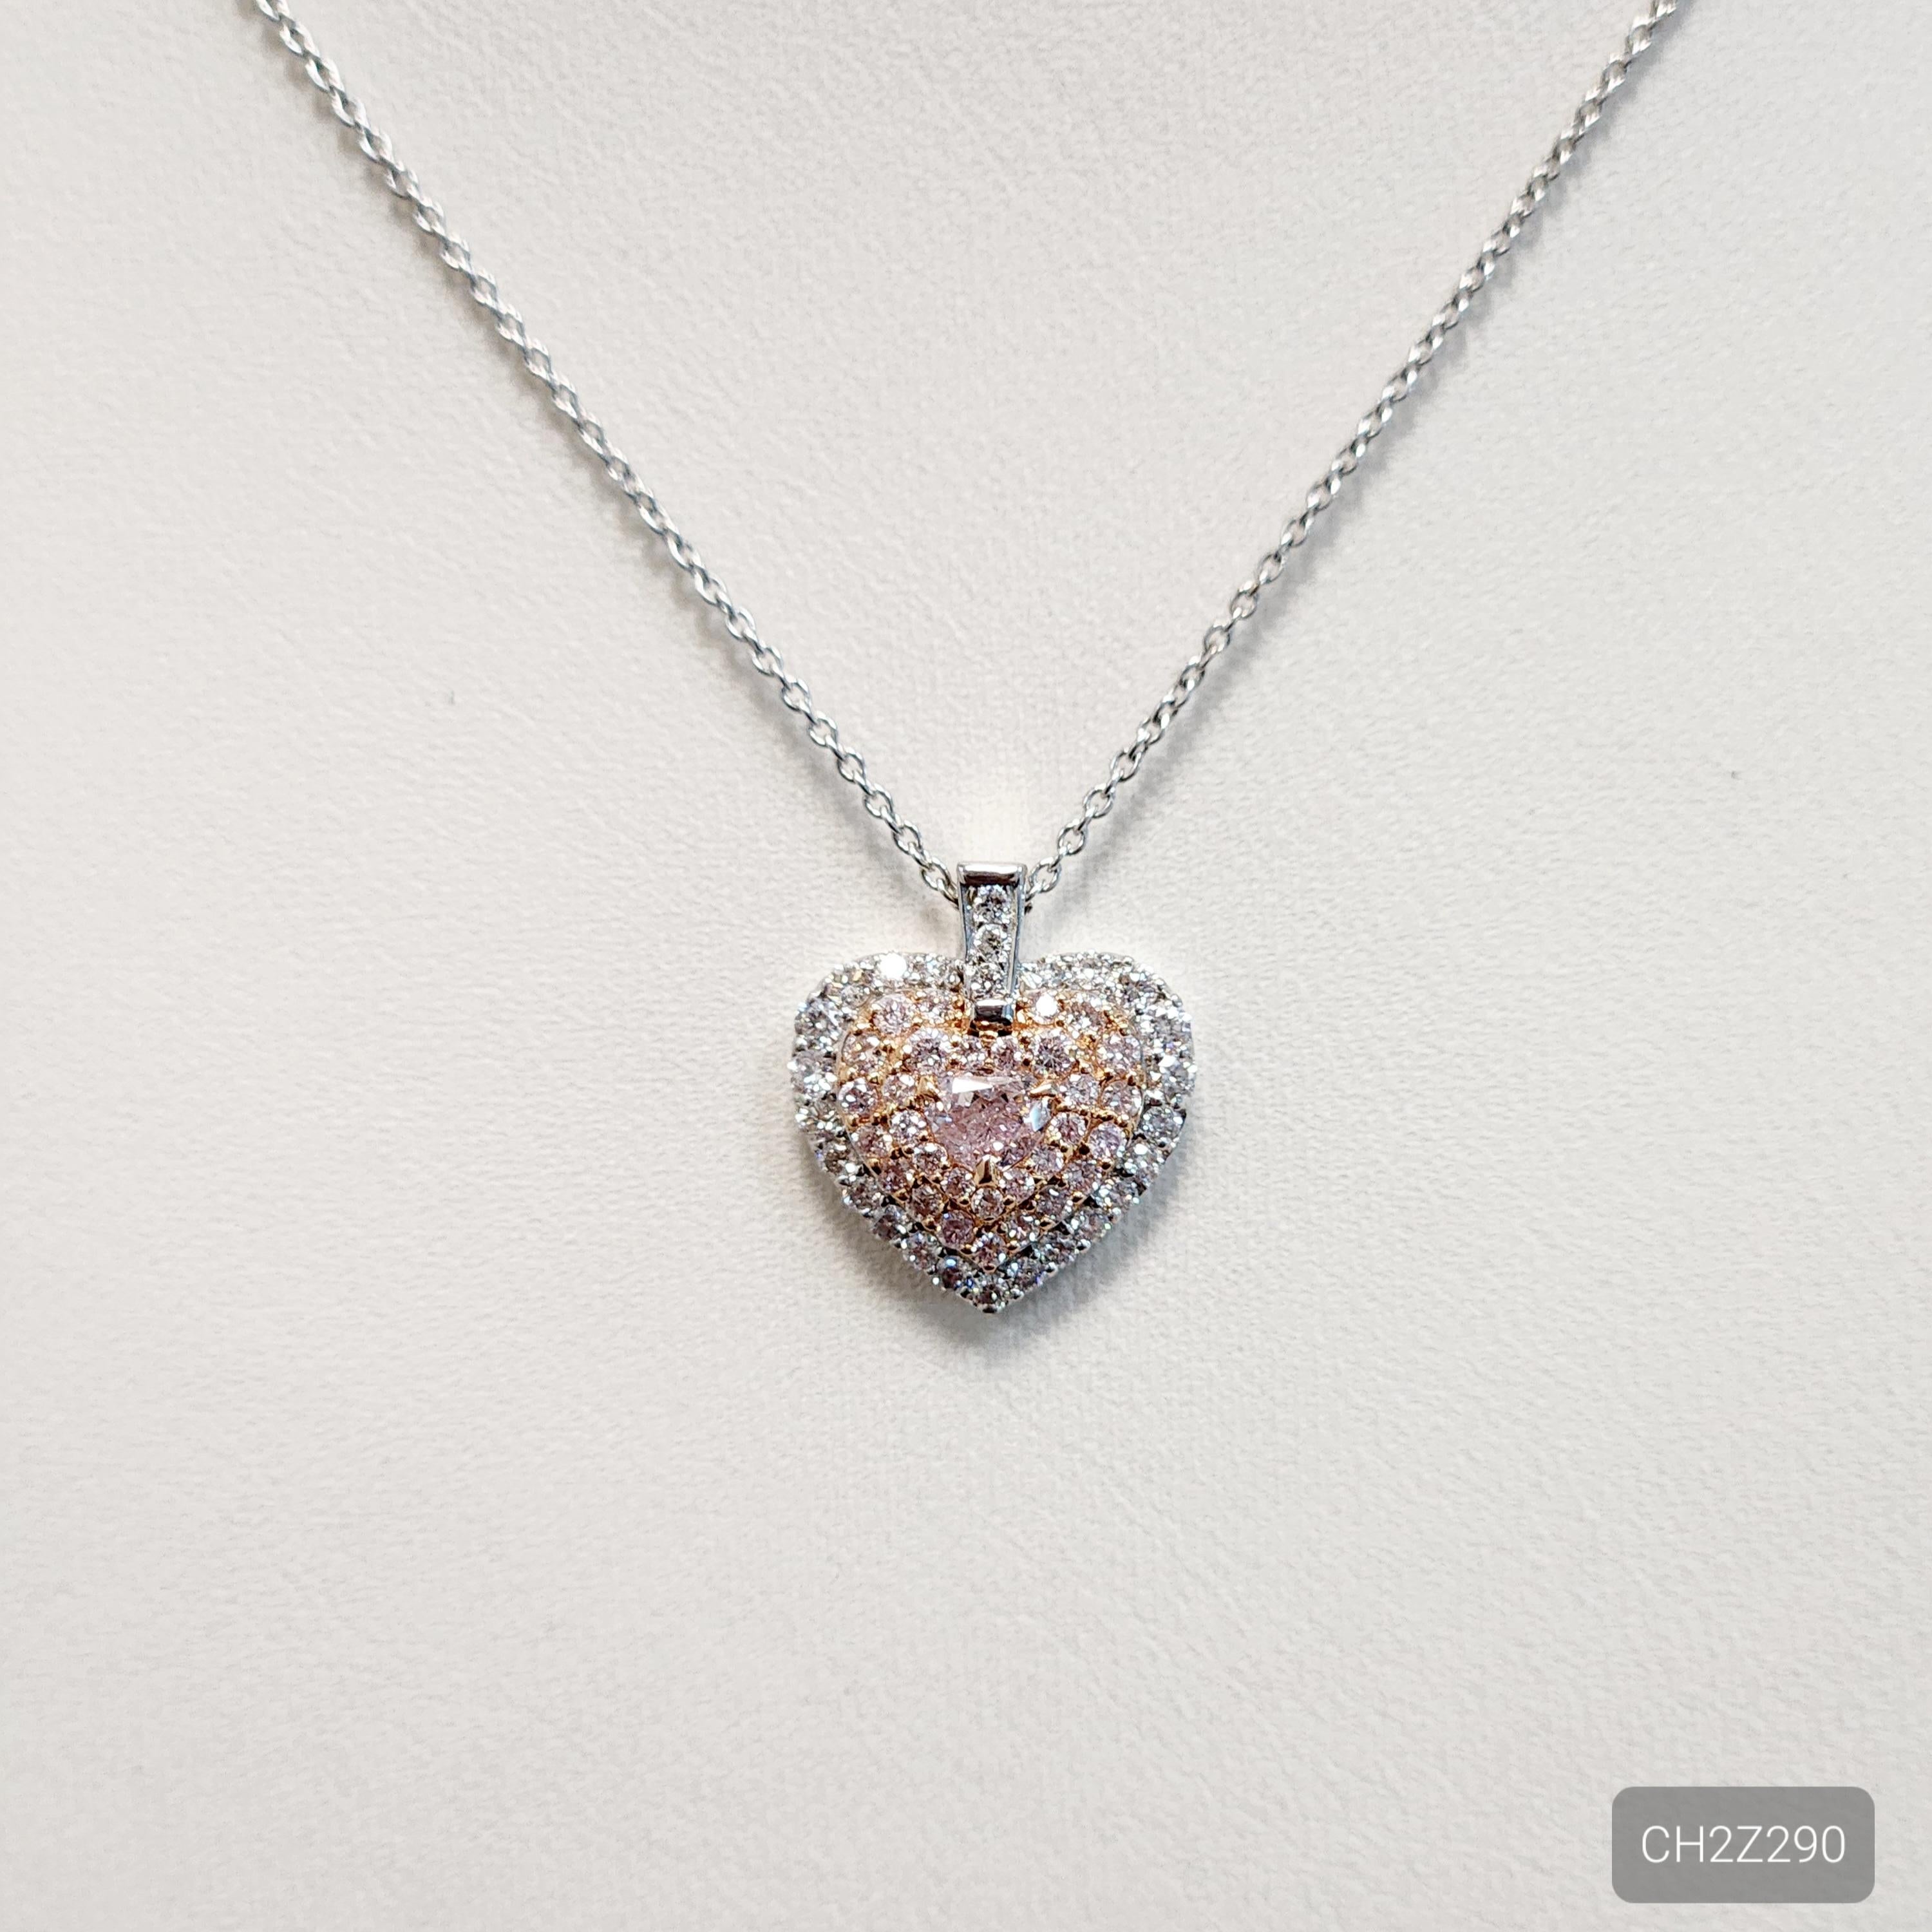 Die herzförmige rosa Diamant-Halskette ist ein auffallendes Schmuckstück, das einen wunderschönen herzförmigen rosa Diamanten von 0,20 Karat zeigt, der von einem Halo aus weißen und rosa Nahkampfdiamanten von 0,21 Karat und 0,24 Karat umgeben ist.